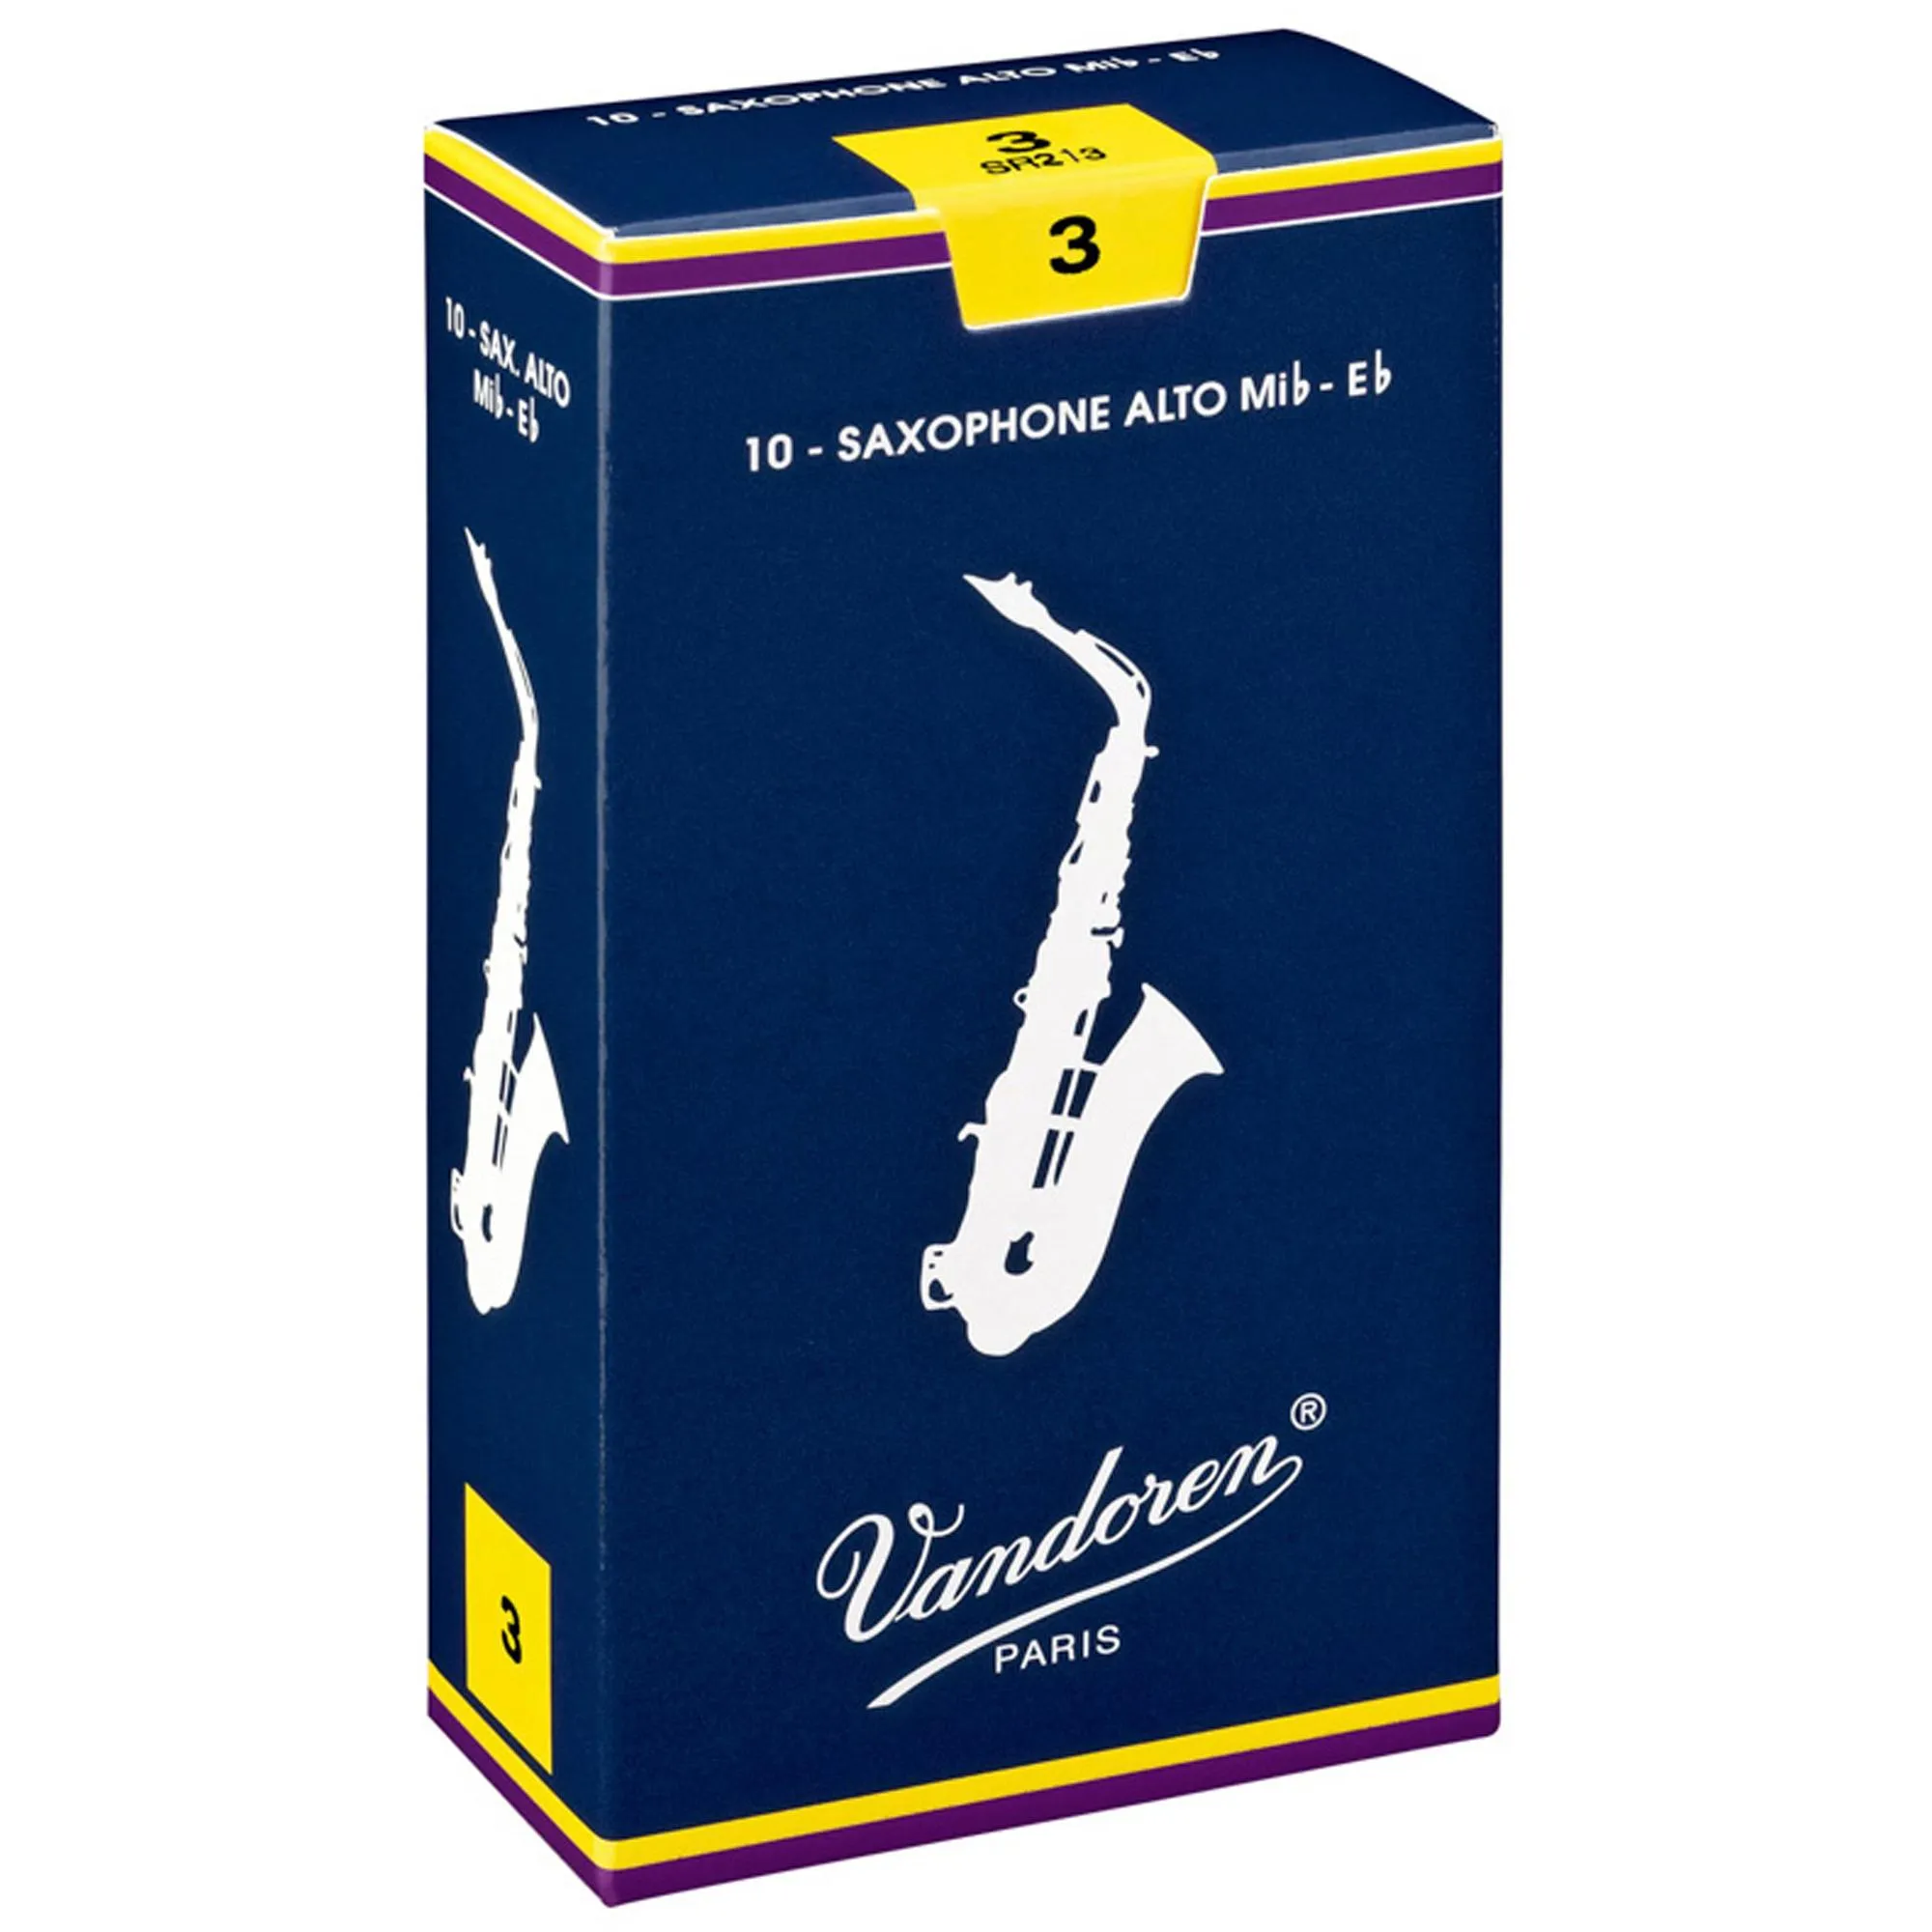 Palheta Tradicional Para Saxofone Alto 3 Vandoren SR213 por 407,99 à vista no boleto/pix ou parcele em até 10x sem juros. Compre na loja Mundomax!